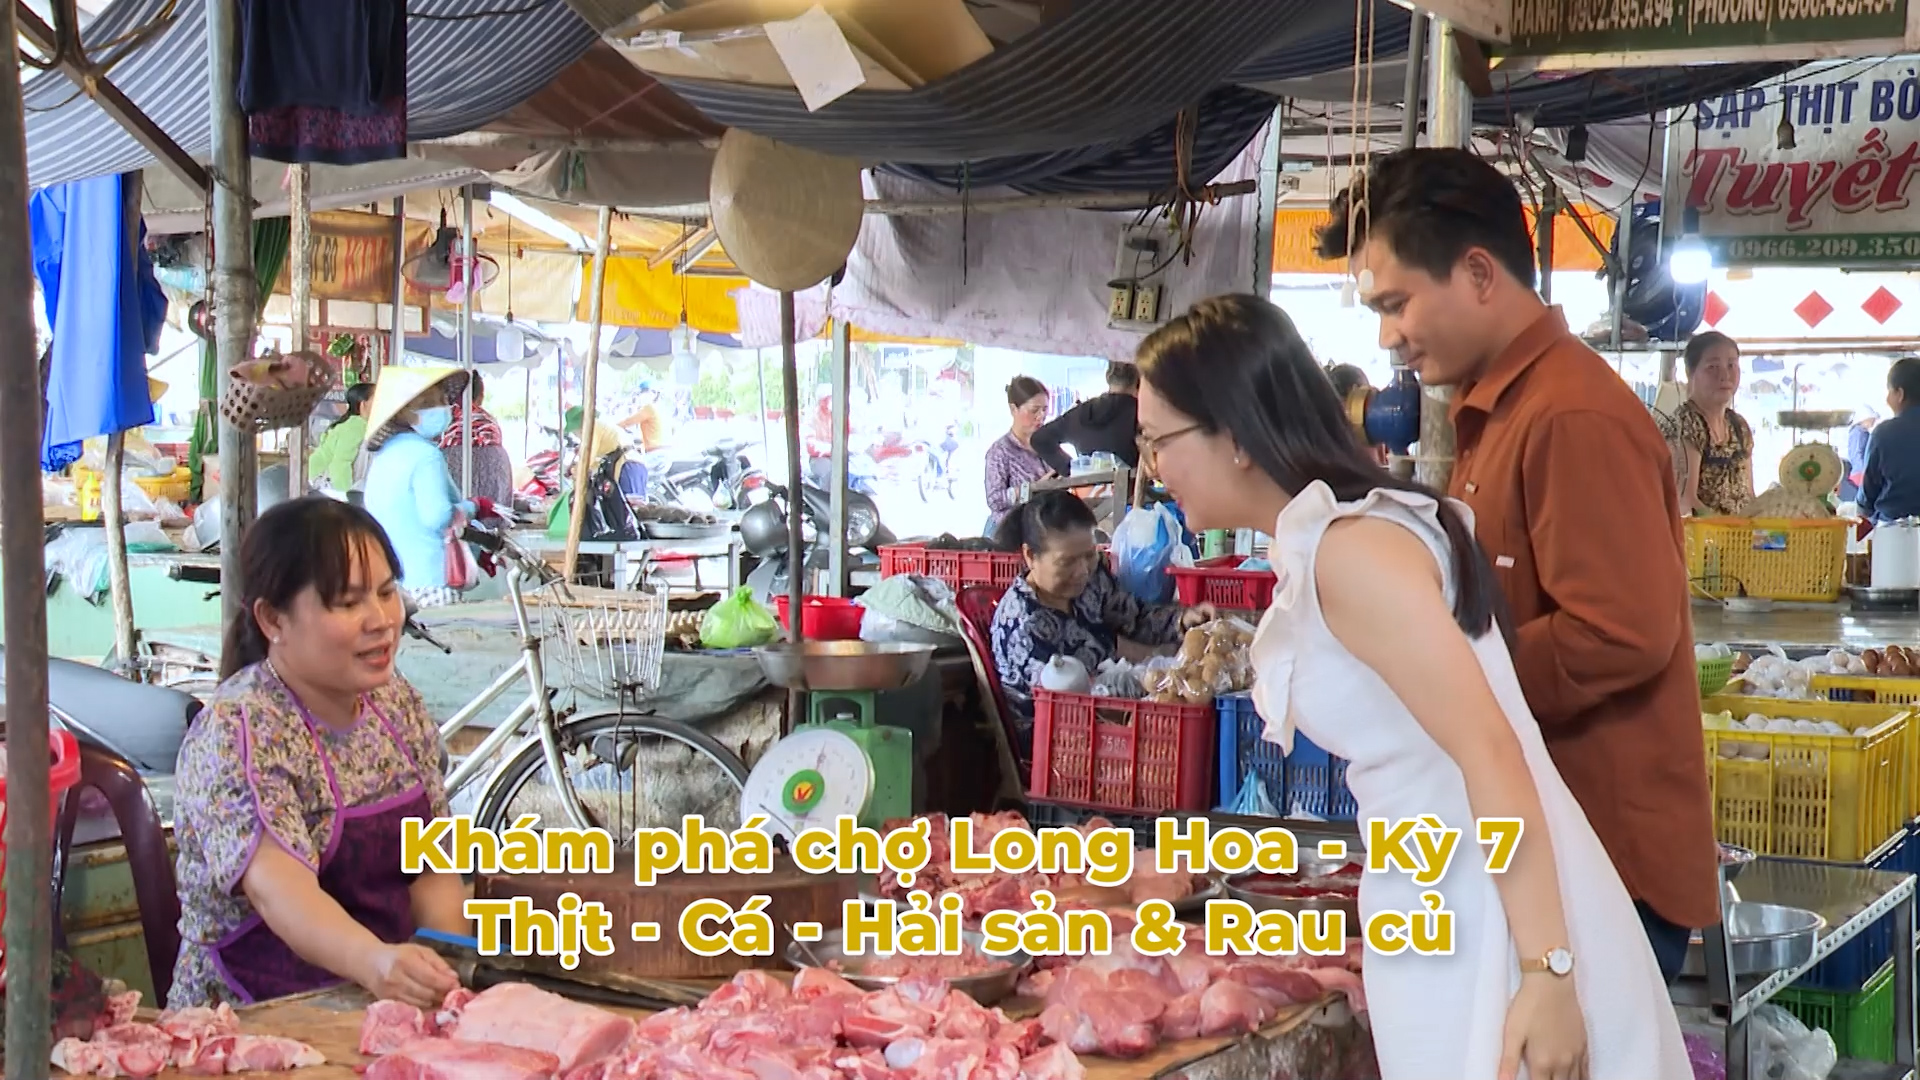 Trailer TÂY NINH DU KÝ | Khám phá chợ Long Hoa kỳ 7 | TayNinhTVEnt